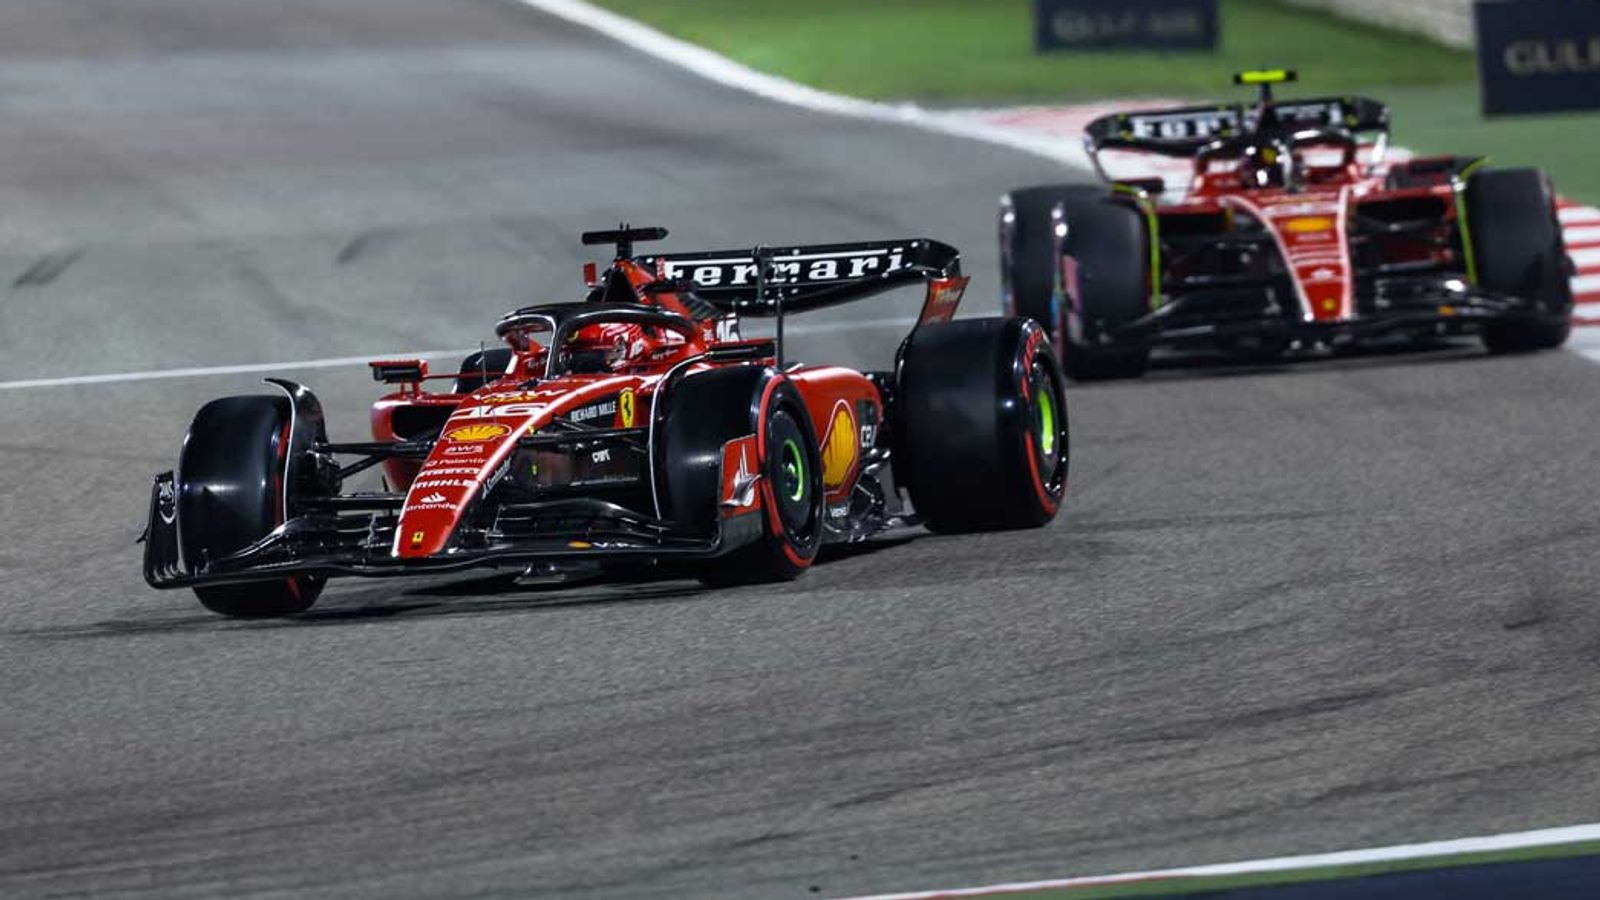 Formel 1 Ferrari bringt Updates mit nach Saudi-Arabien Formel 1 News Sky Sport